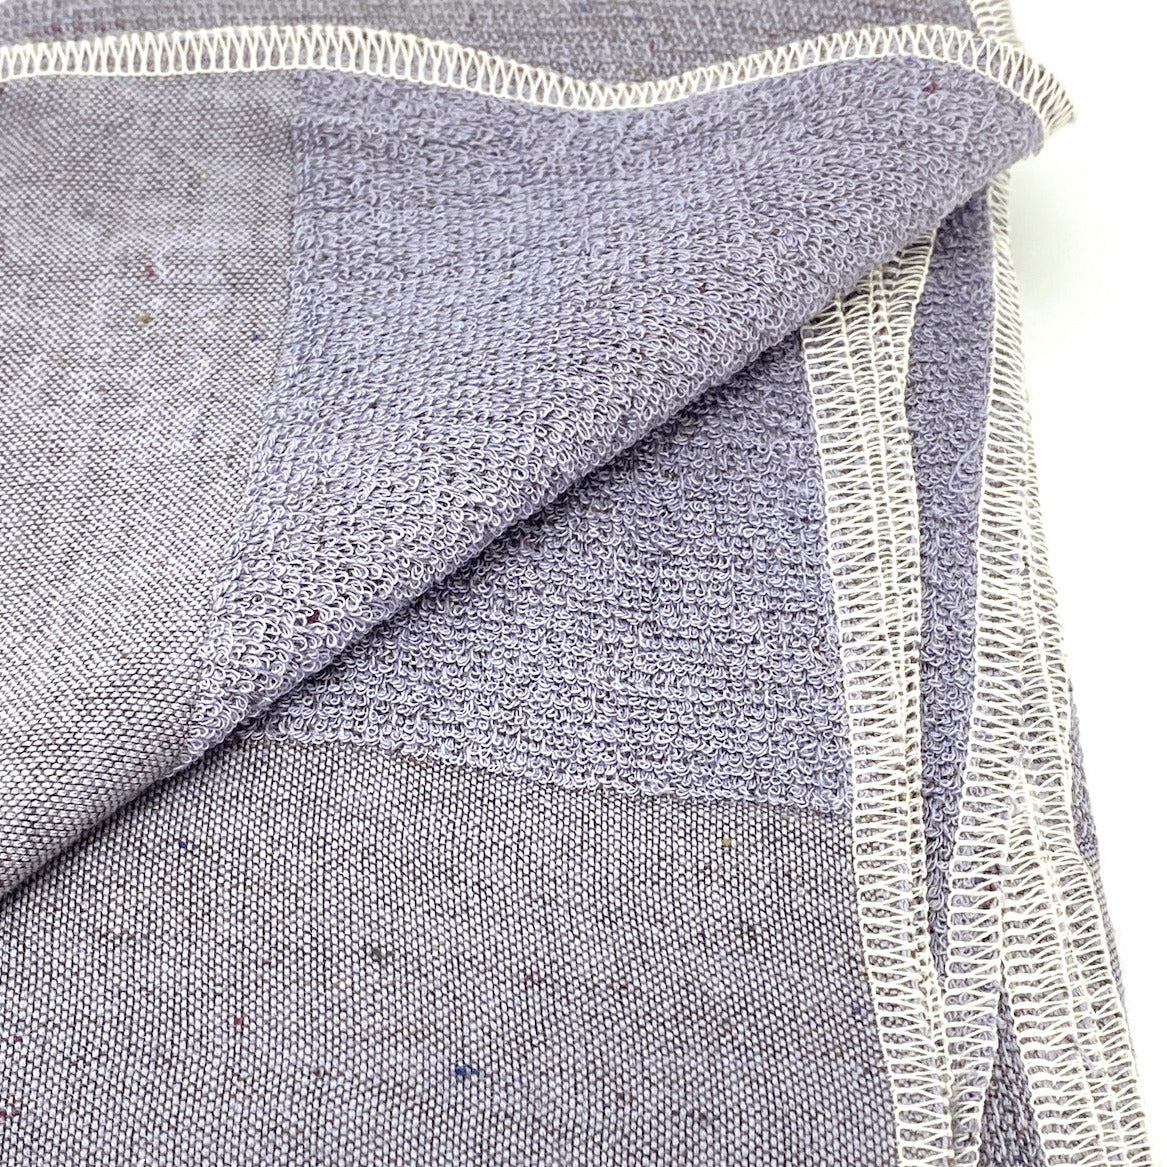 Moku L | Baumwoll-Handtuch von Kontex | 60 x 120cm | Made in Japan